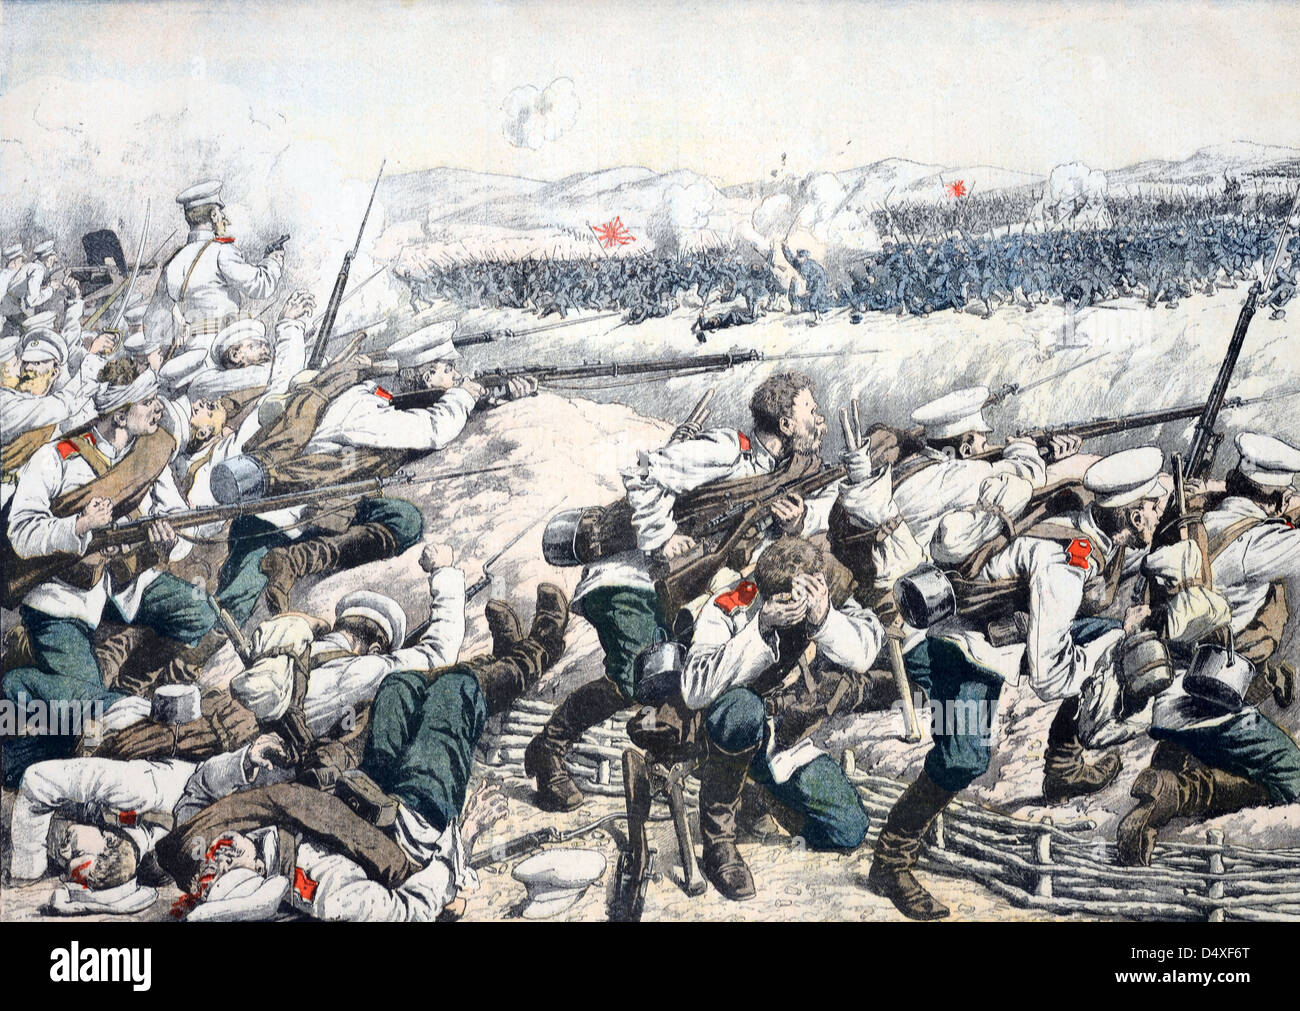 Alte oder alte Illustration der Schlacht am russisch-japanischen Krieg in der Nähe von Mukden (Shenyang) Mandschurei (Okt 1904/05) Stockfoto